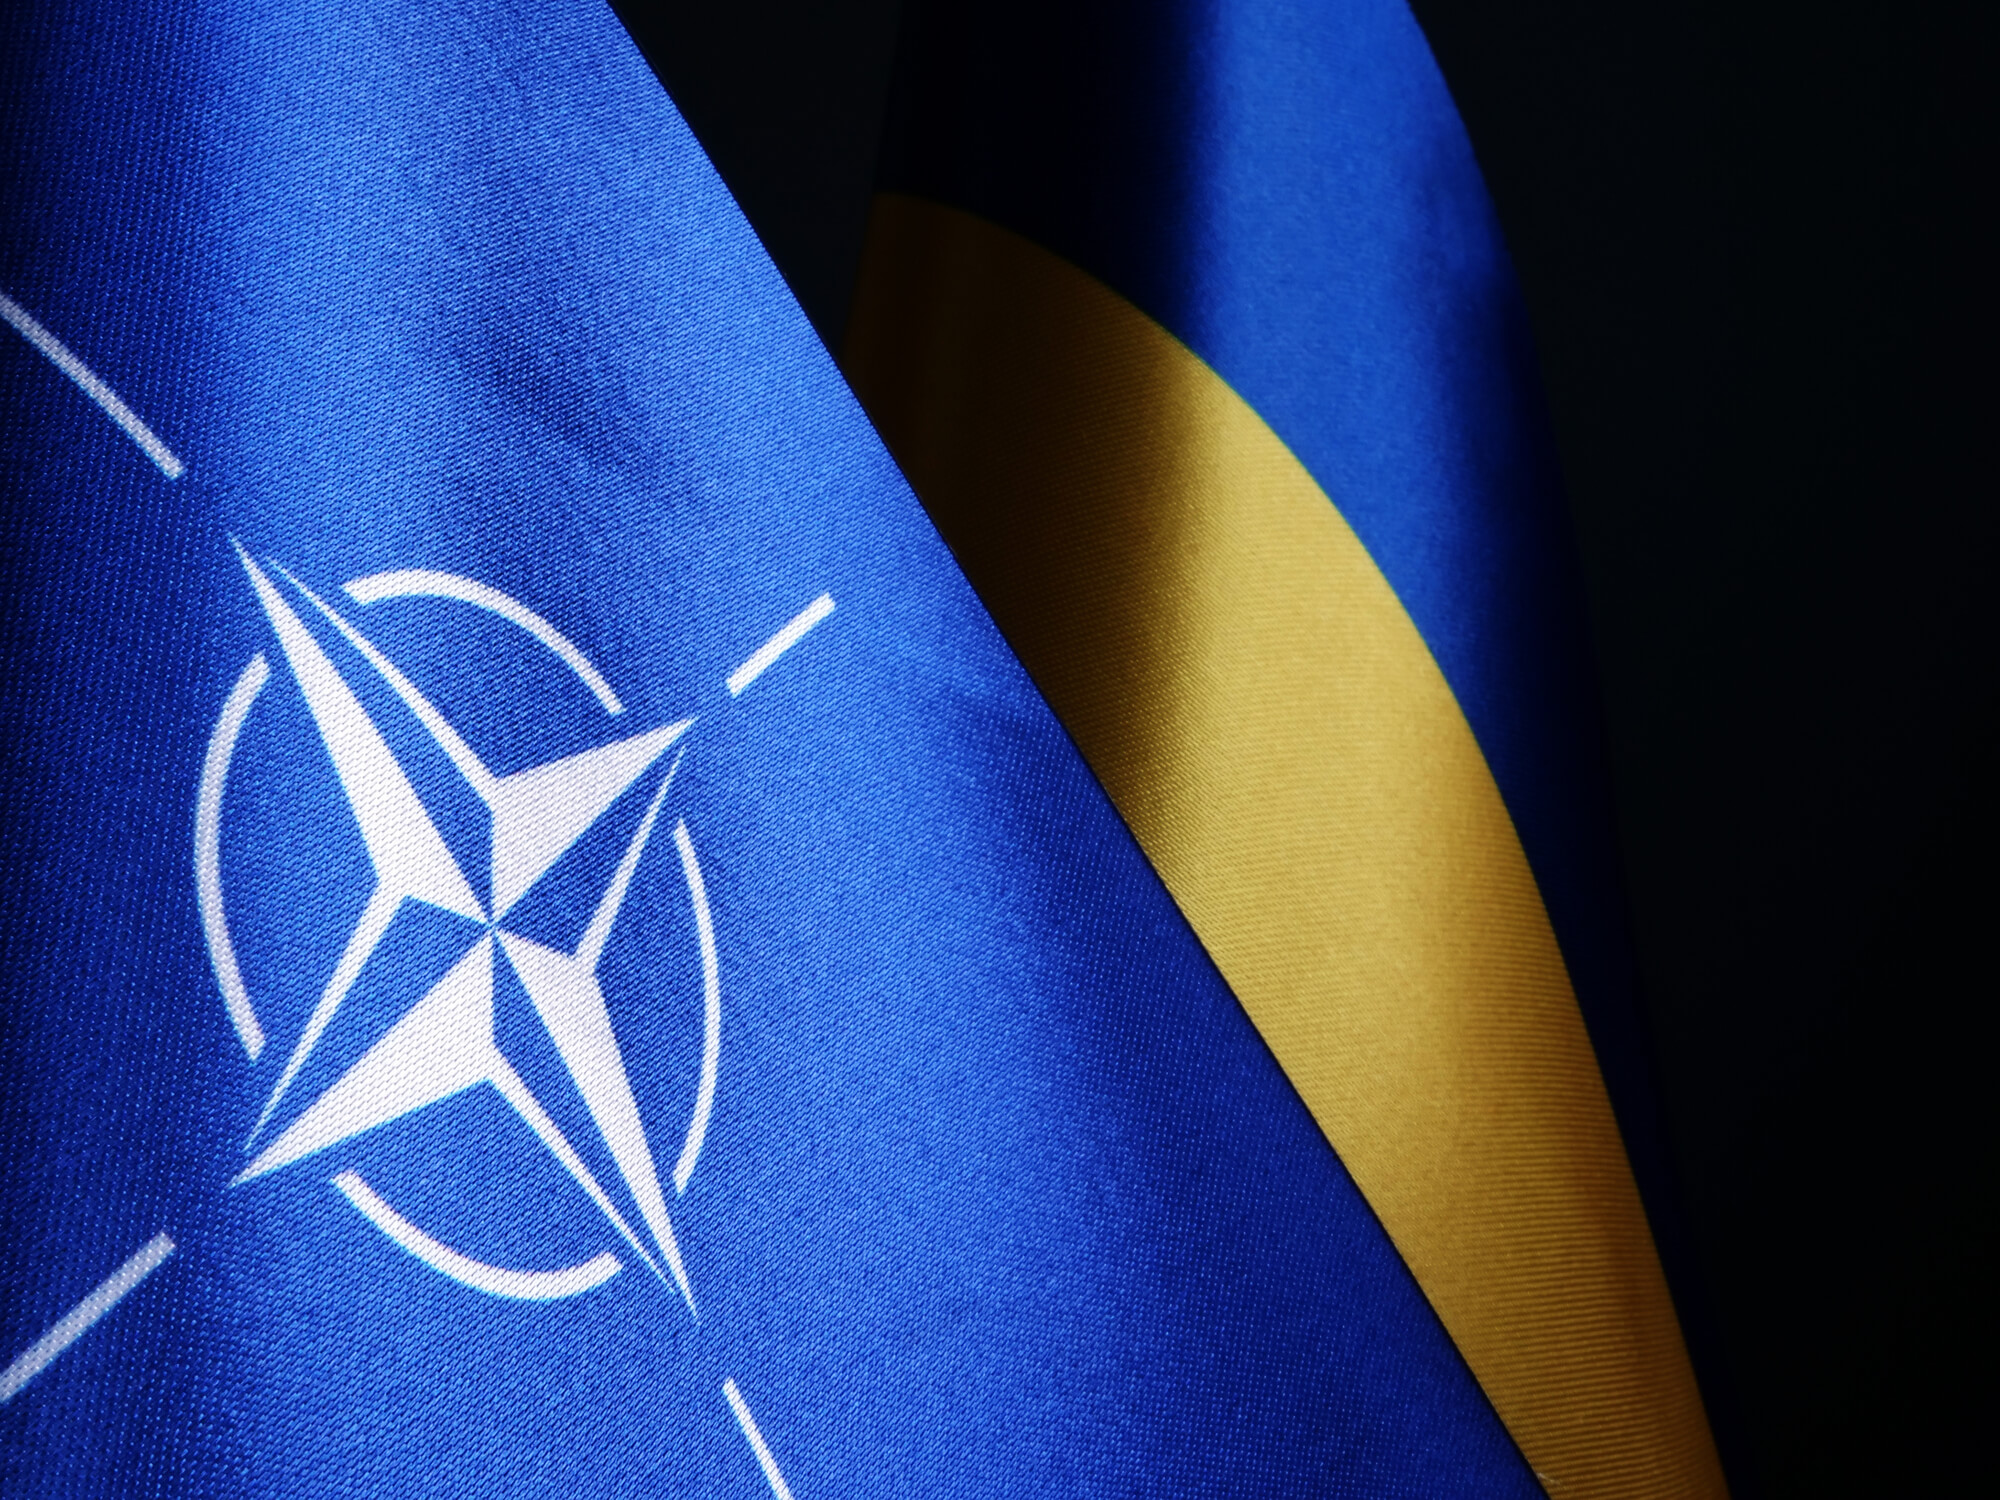 Індекс реформ 221: декларування військової техніки на митниці за стандартами ЄС і НАТО